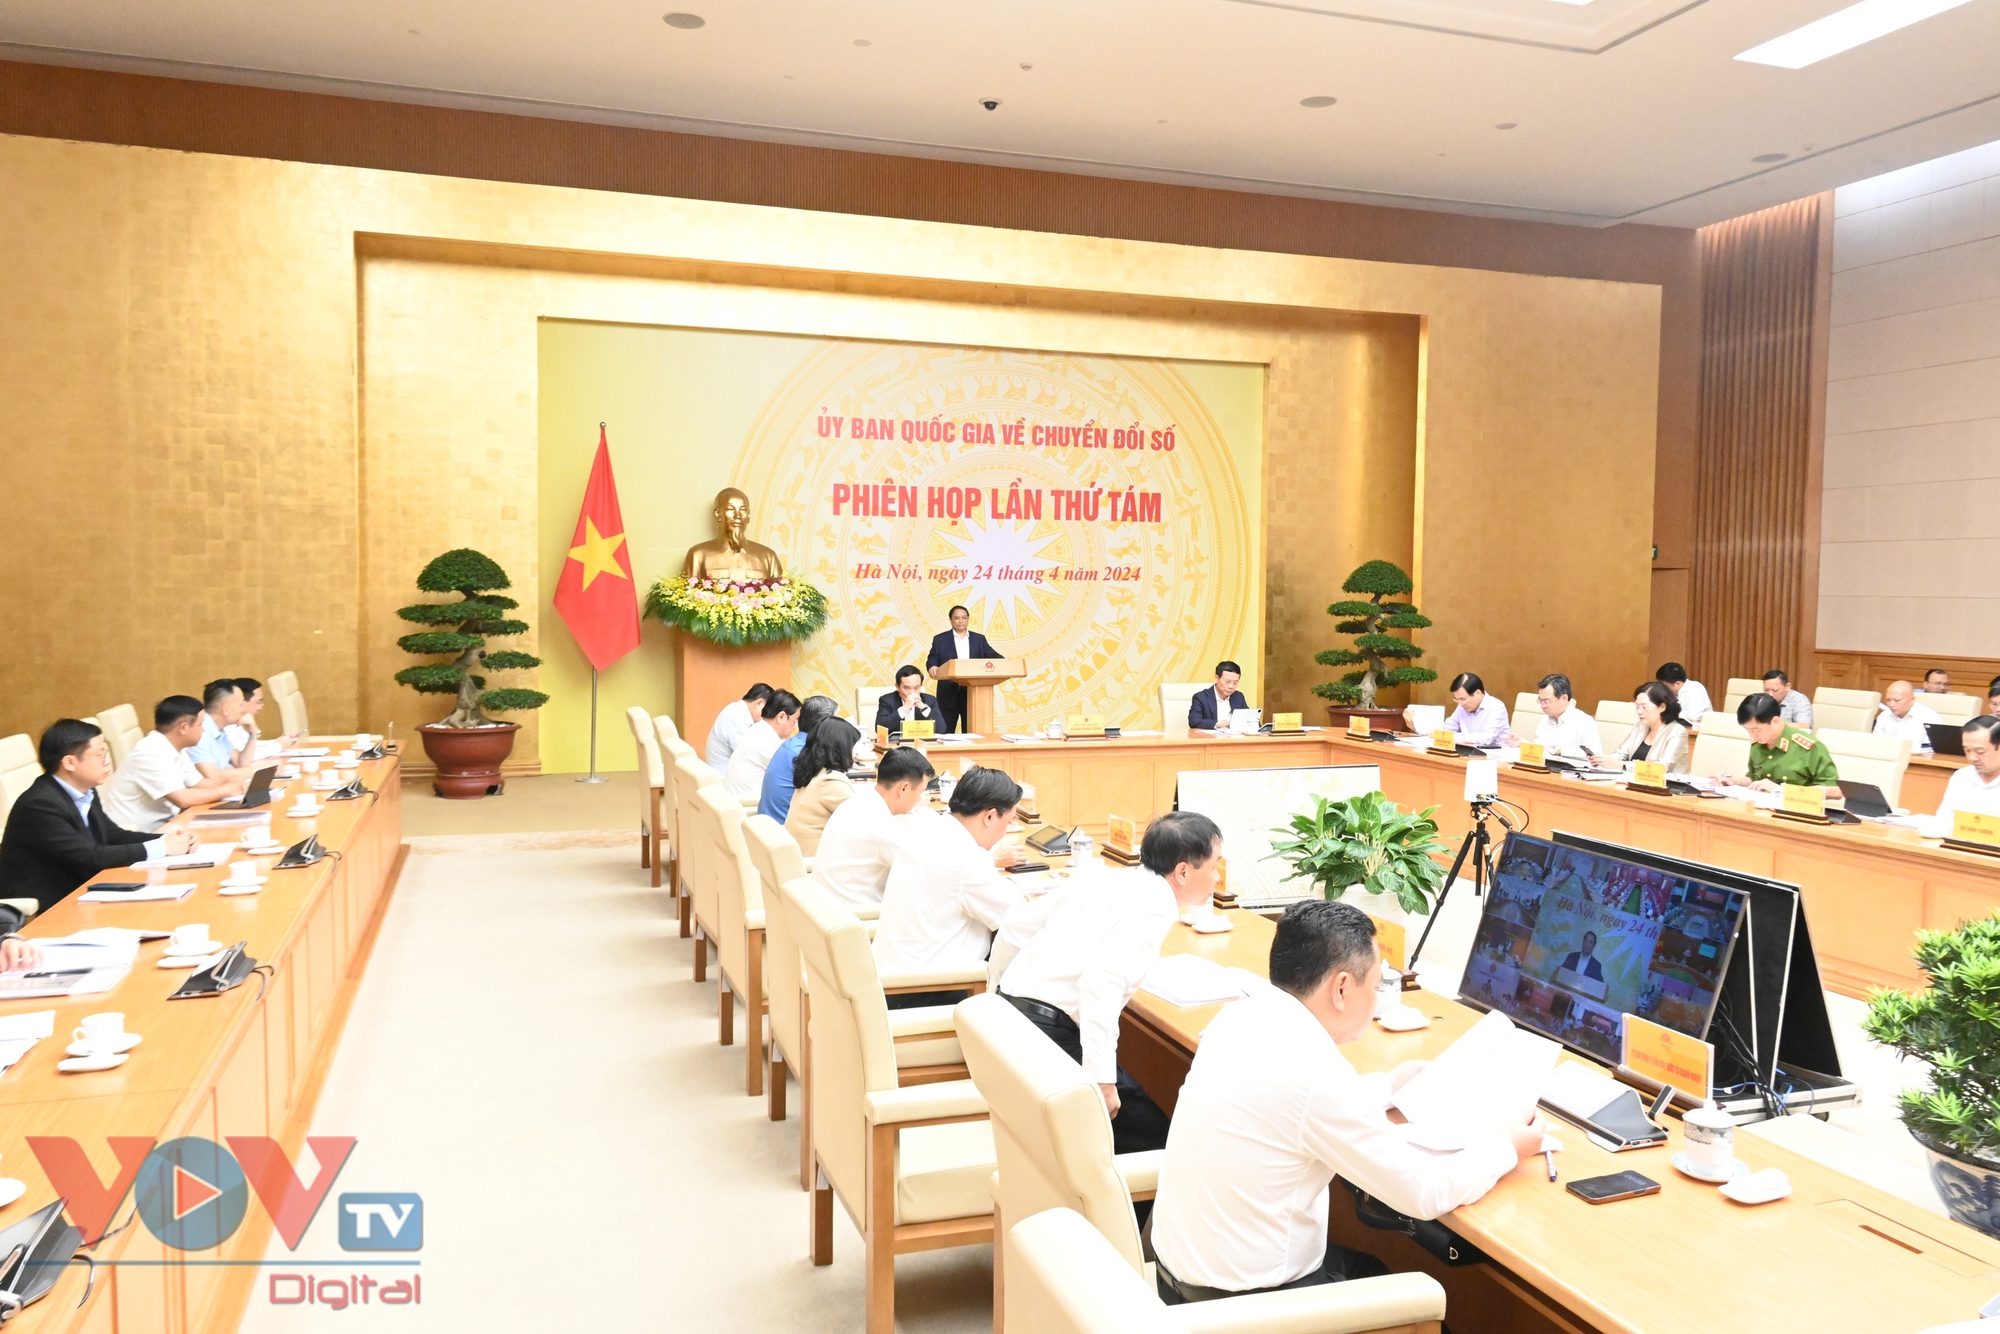 Thủ tướng Phạm Minh Chính chủ trì Phiên họp lần thứ 8 của Ủy ban Quốc gia về chuyển đổi số- Ảnh 3.